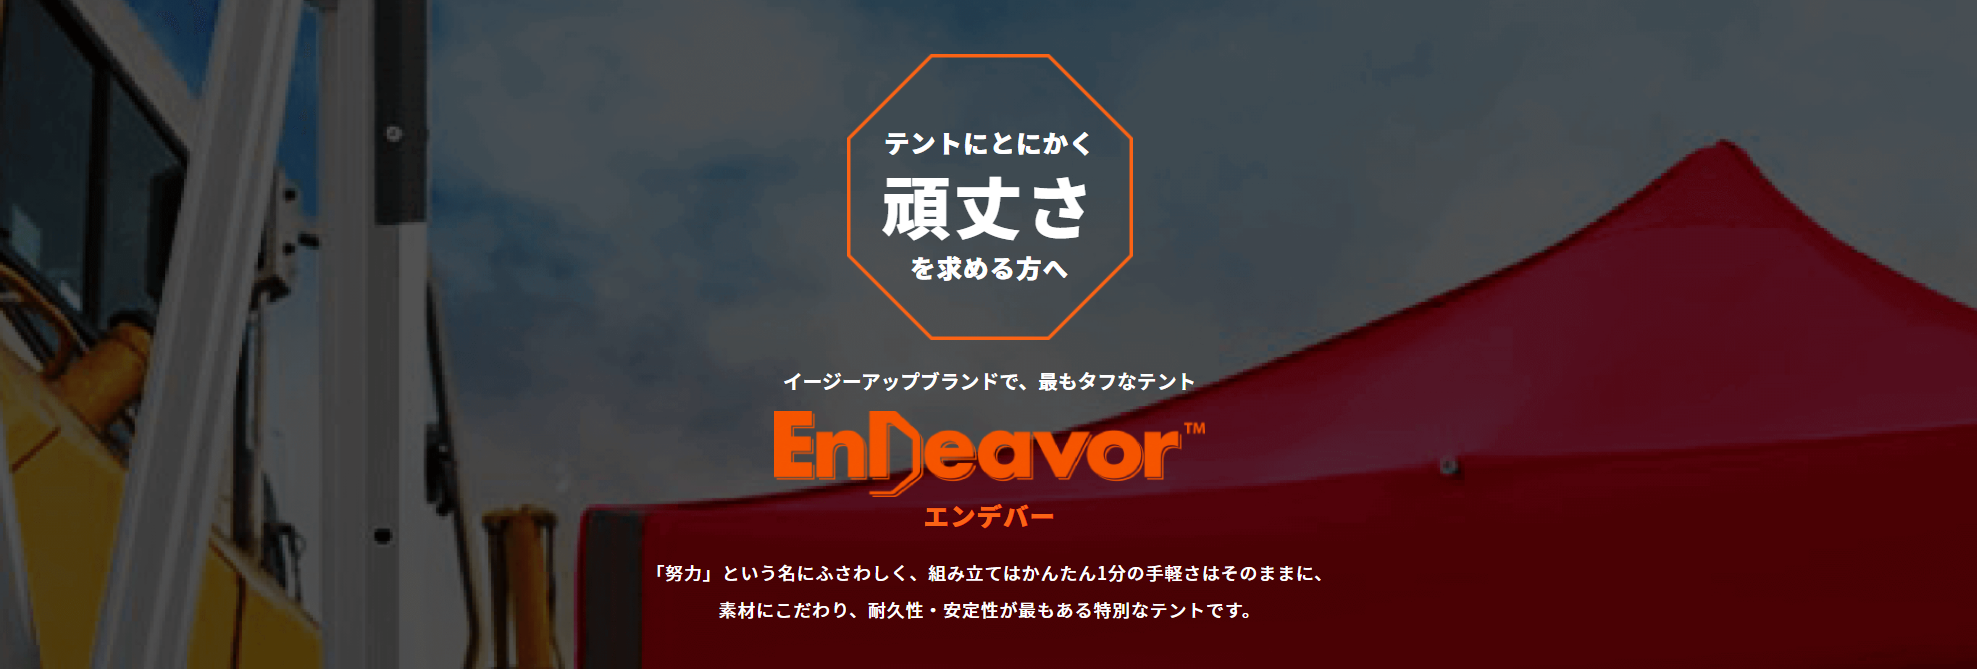 イージーアップテントの日本防炎協会防炎認定製品エンデバーシリーズ